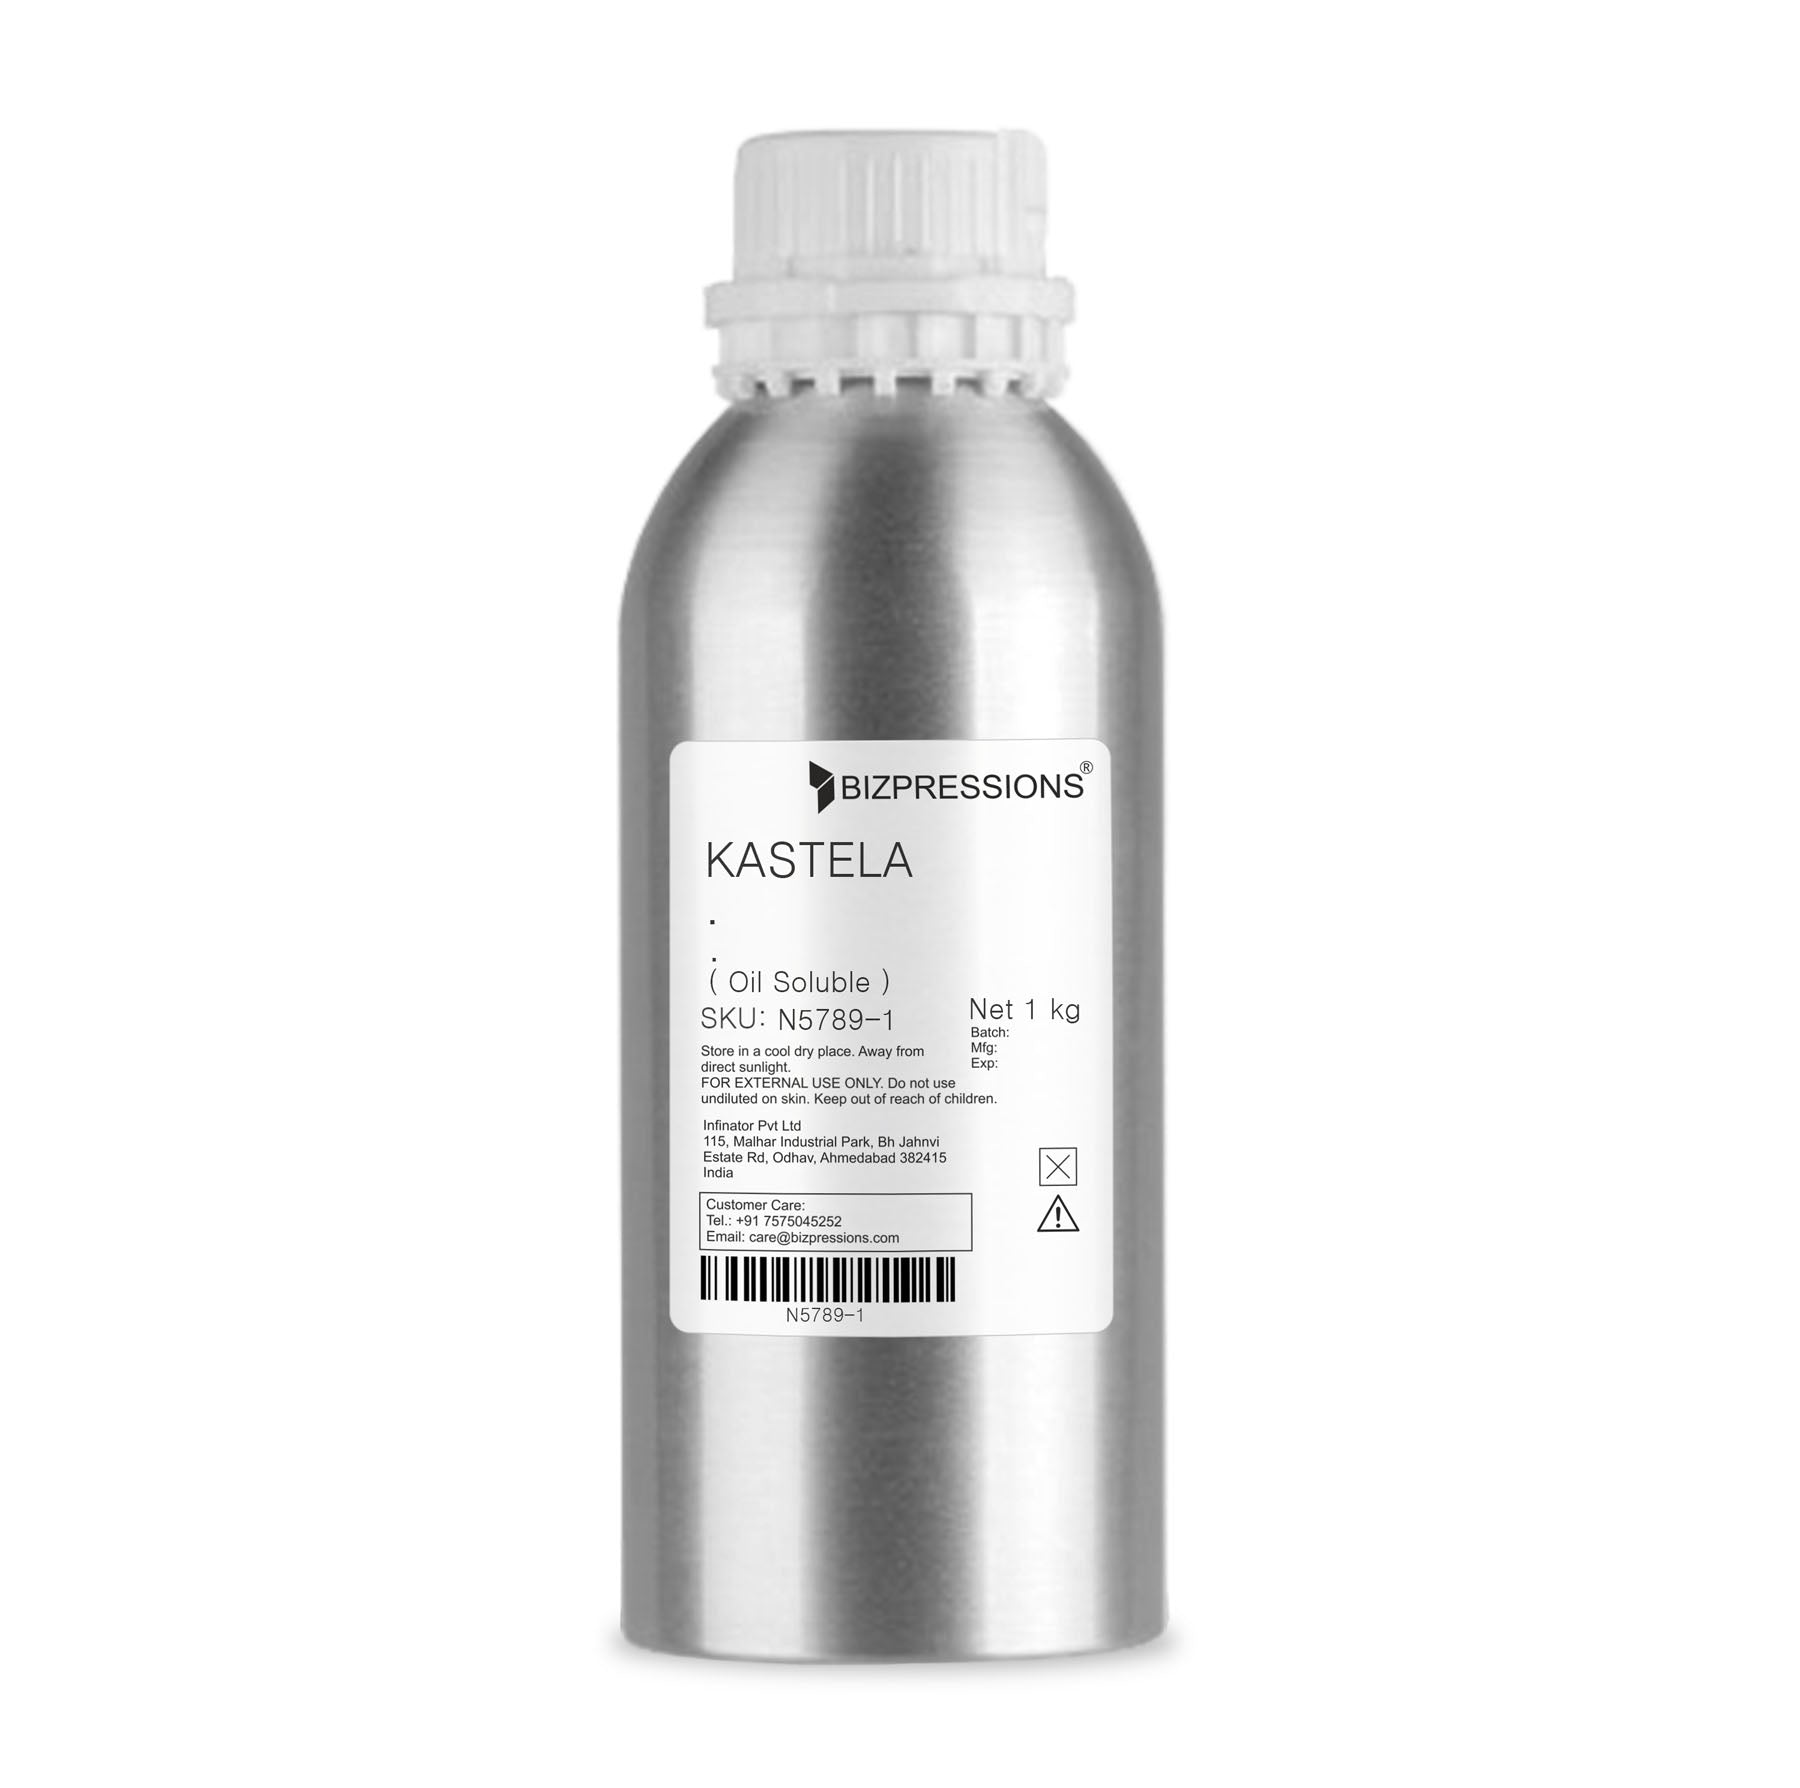 KASTELA - Fragrance ( Oil Soluble ) - 1 kg